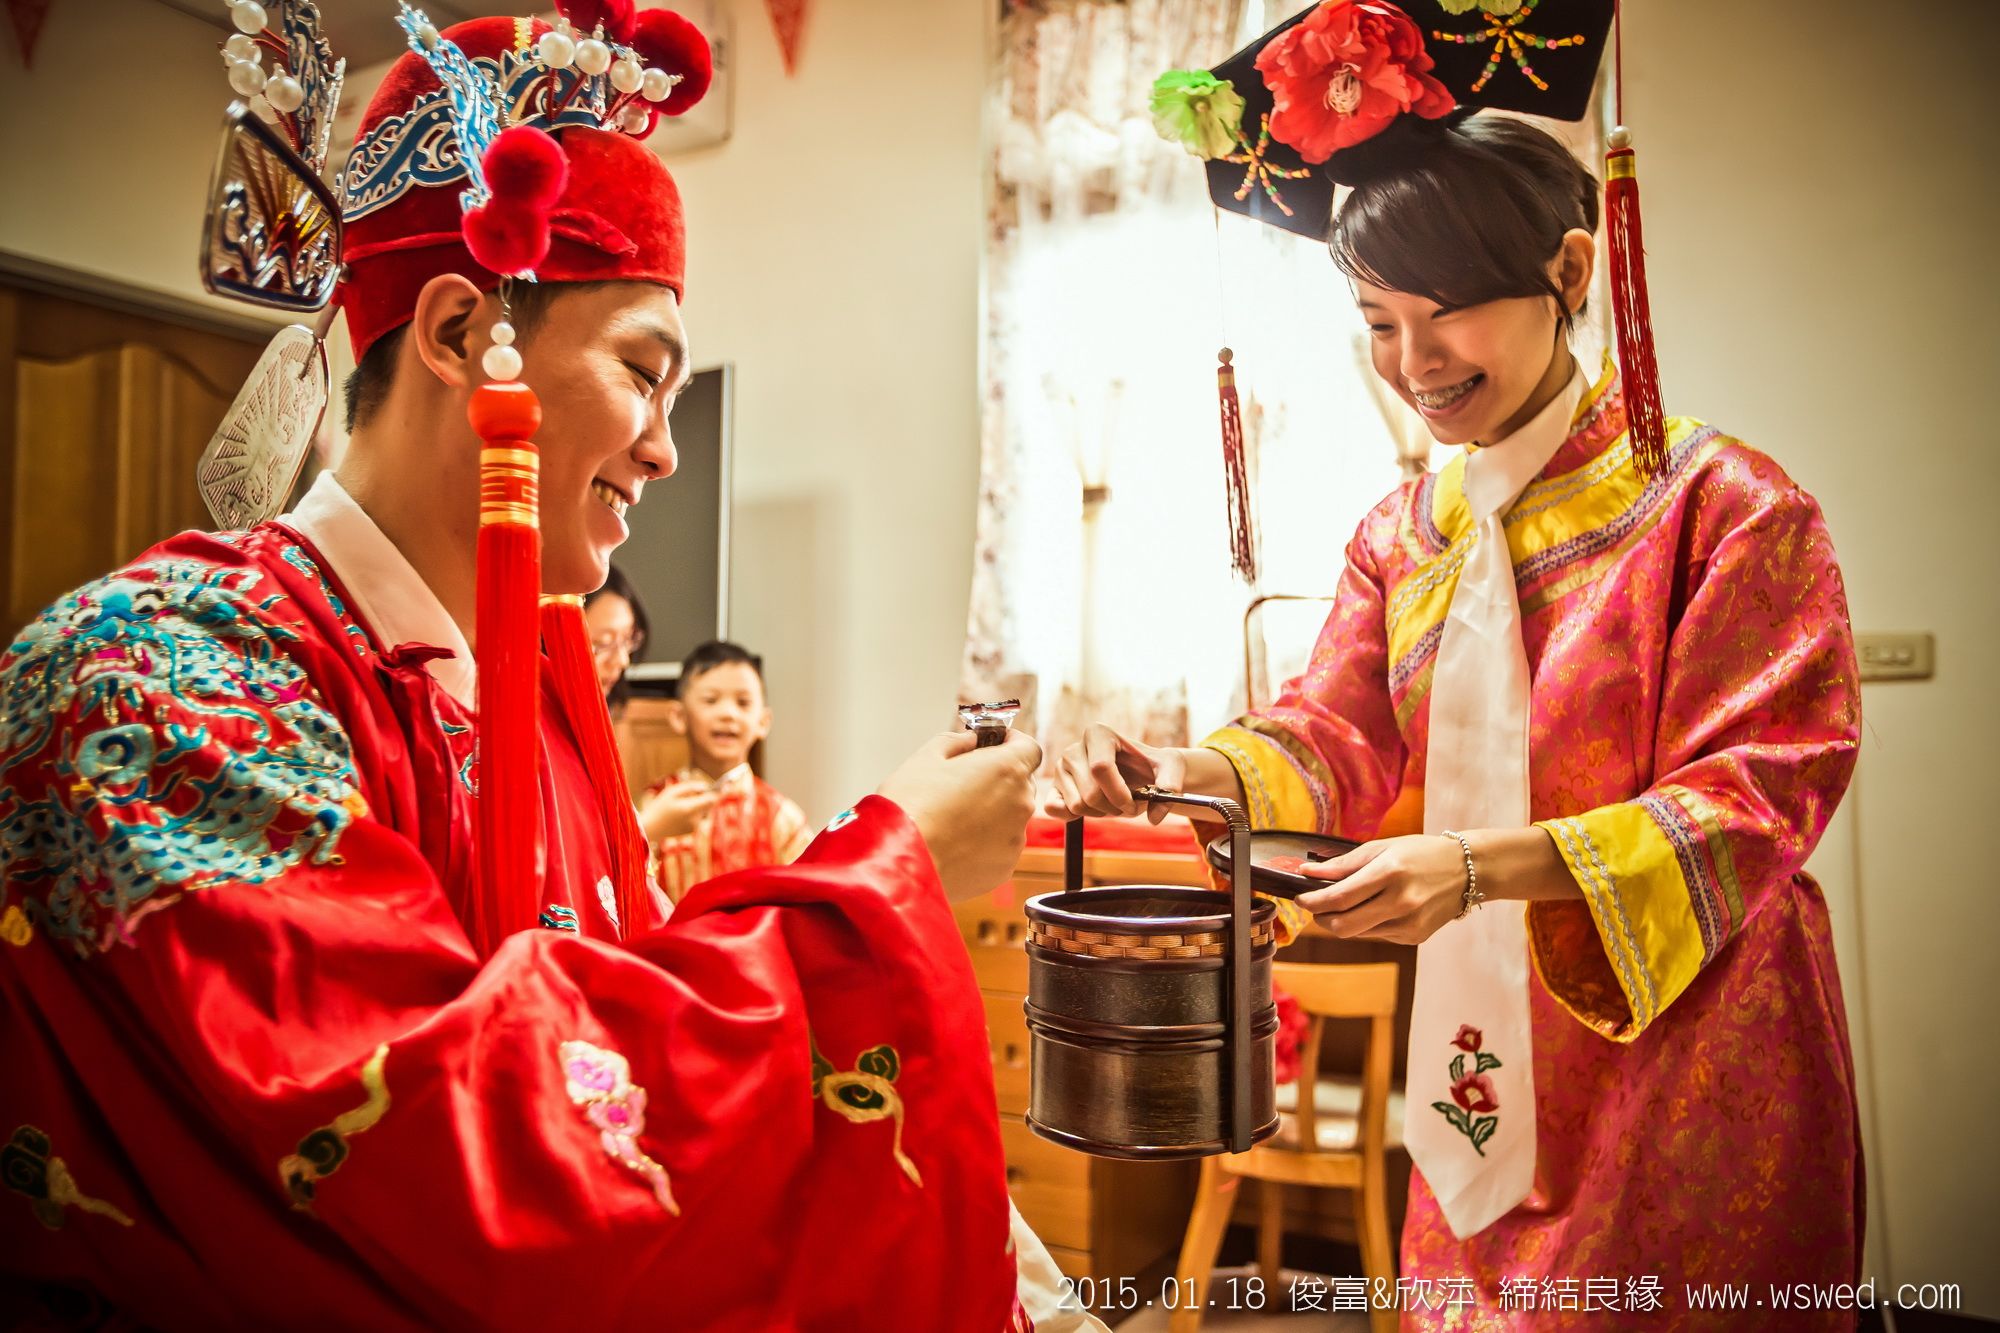 分享我的「中国古式迎娶」婚礼纪录